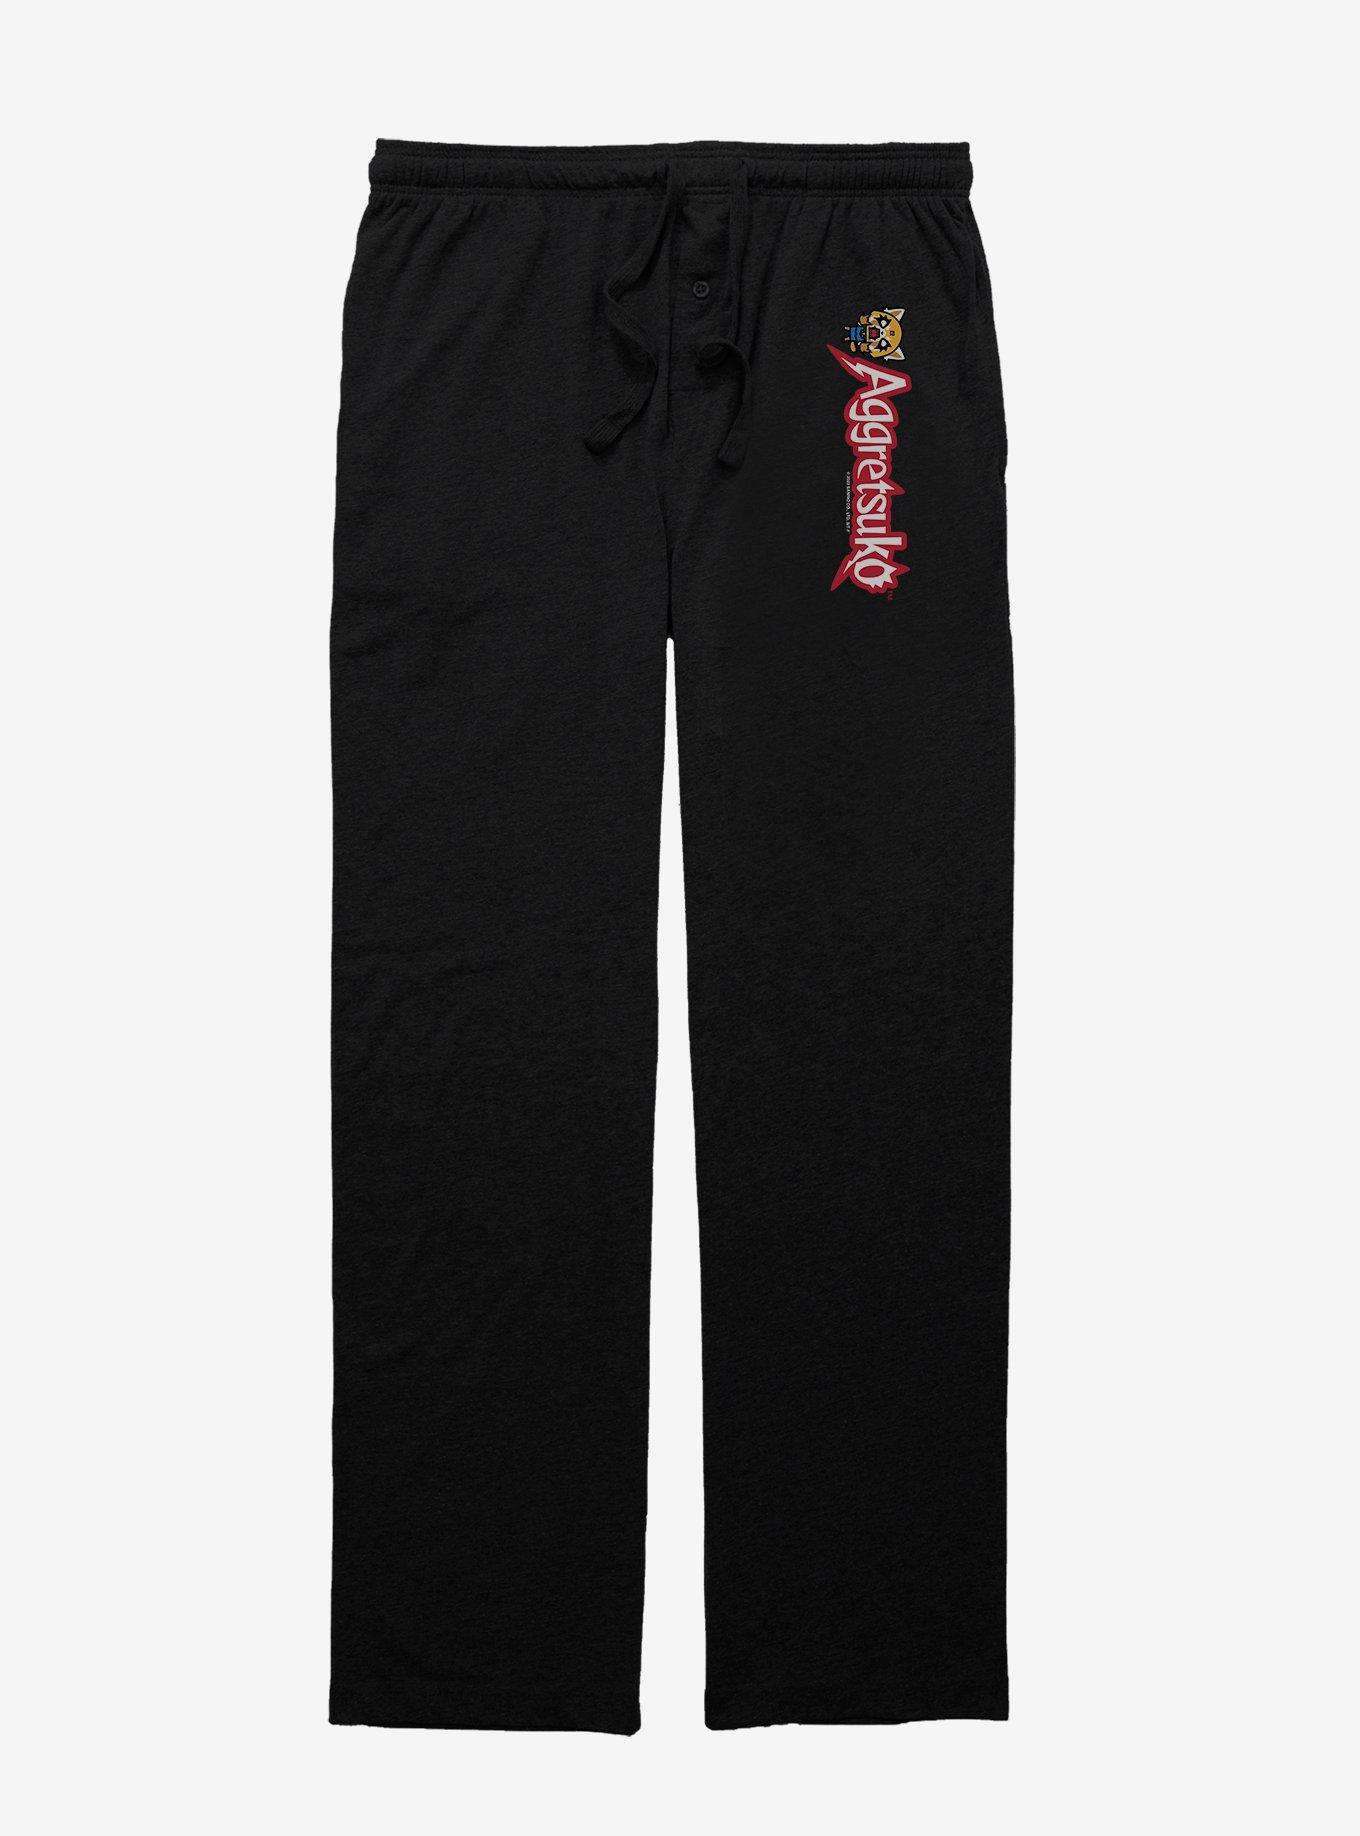 Aggretsuko Rock Pose Pajama Pants, BLACK, hi-res